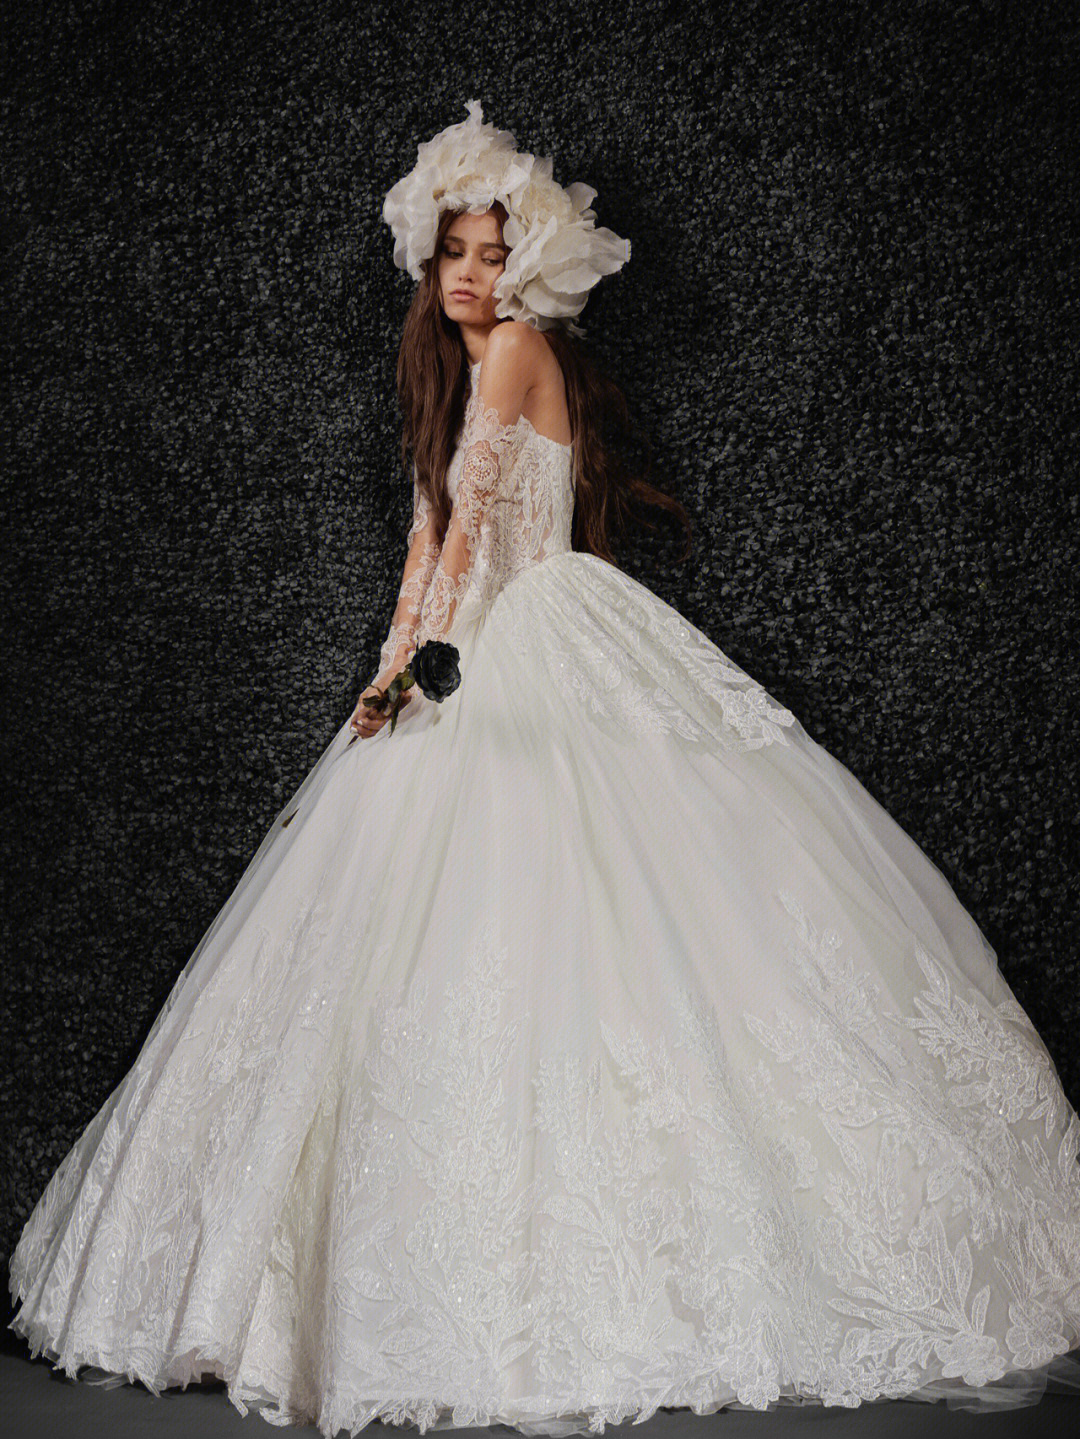 隆重推出全新婚纱品牌 vera wang bride,让每位新娘在婚礼当天都有